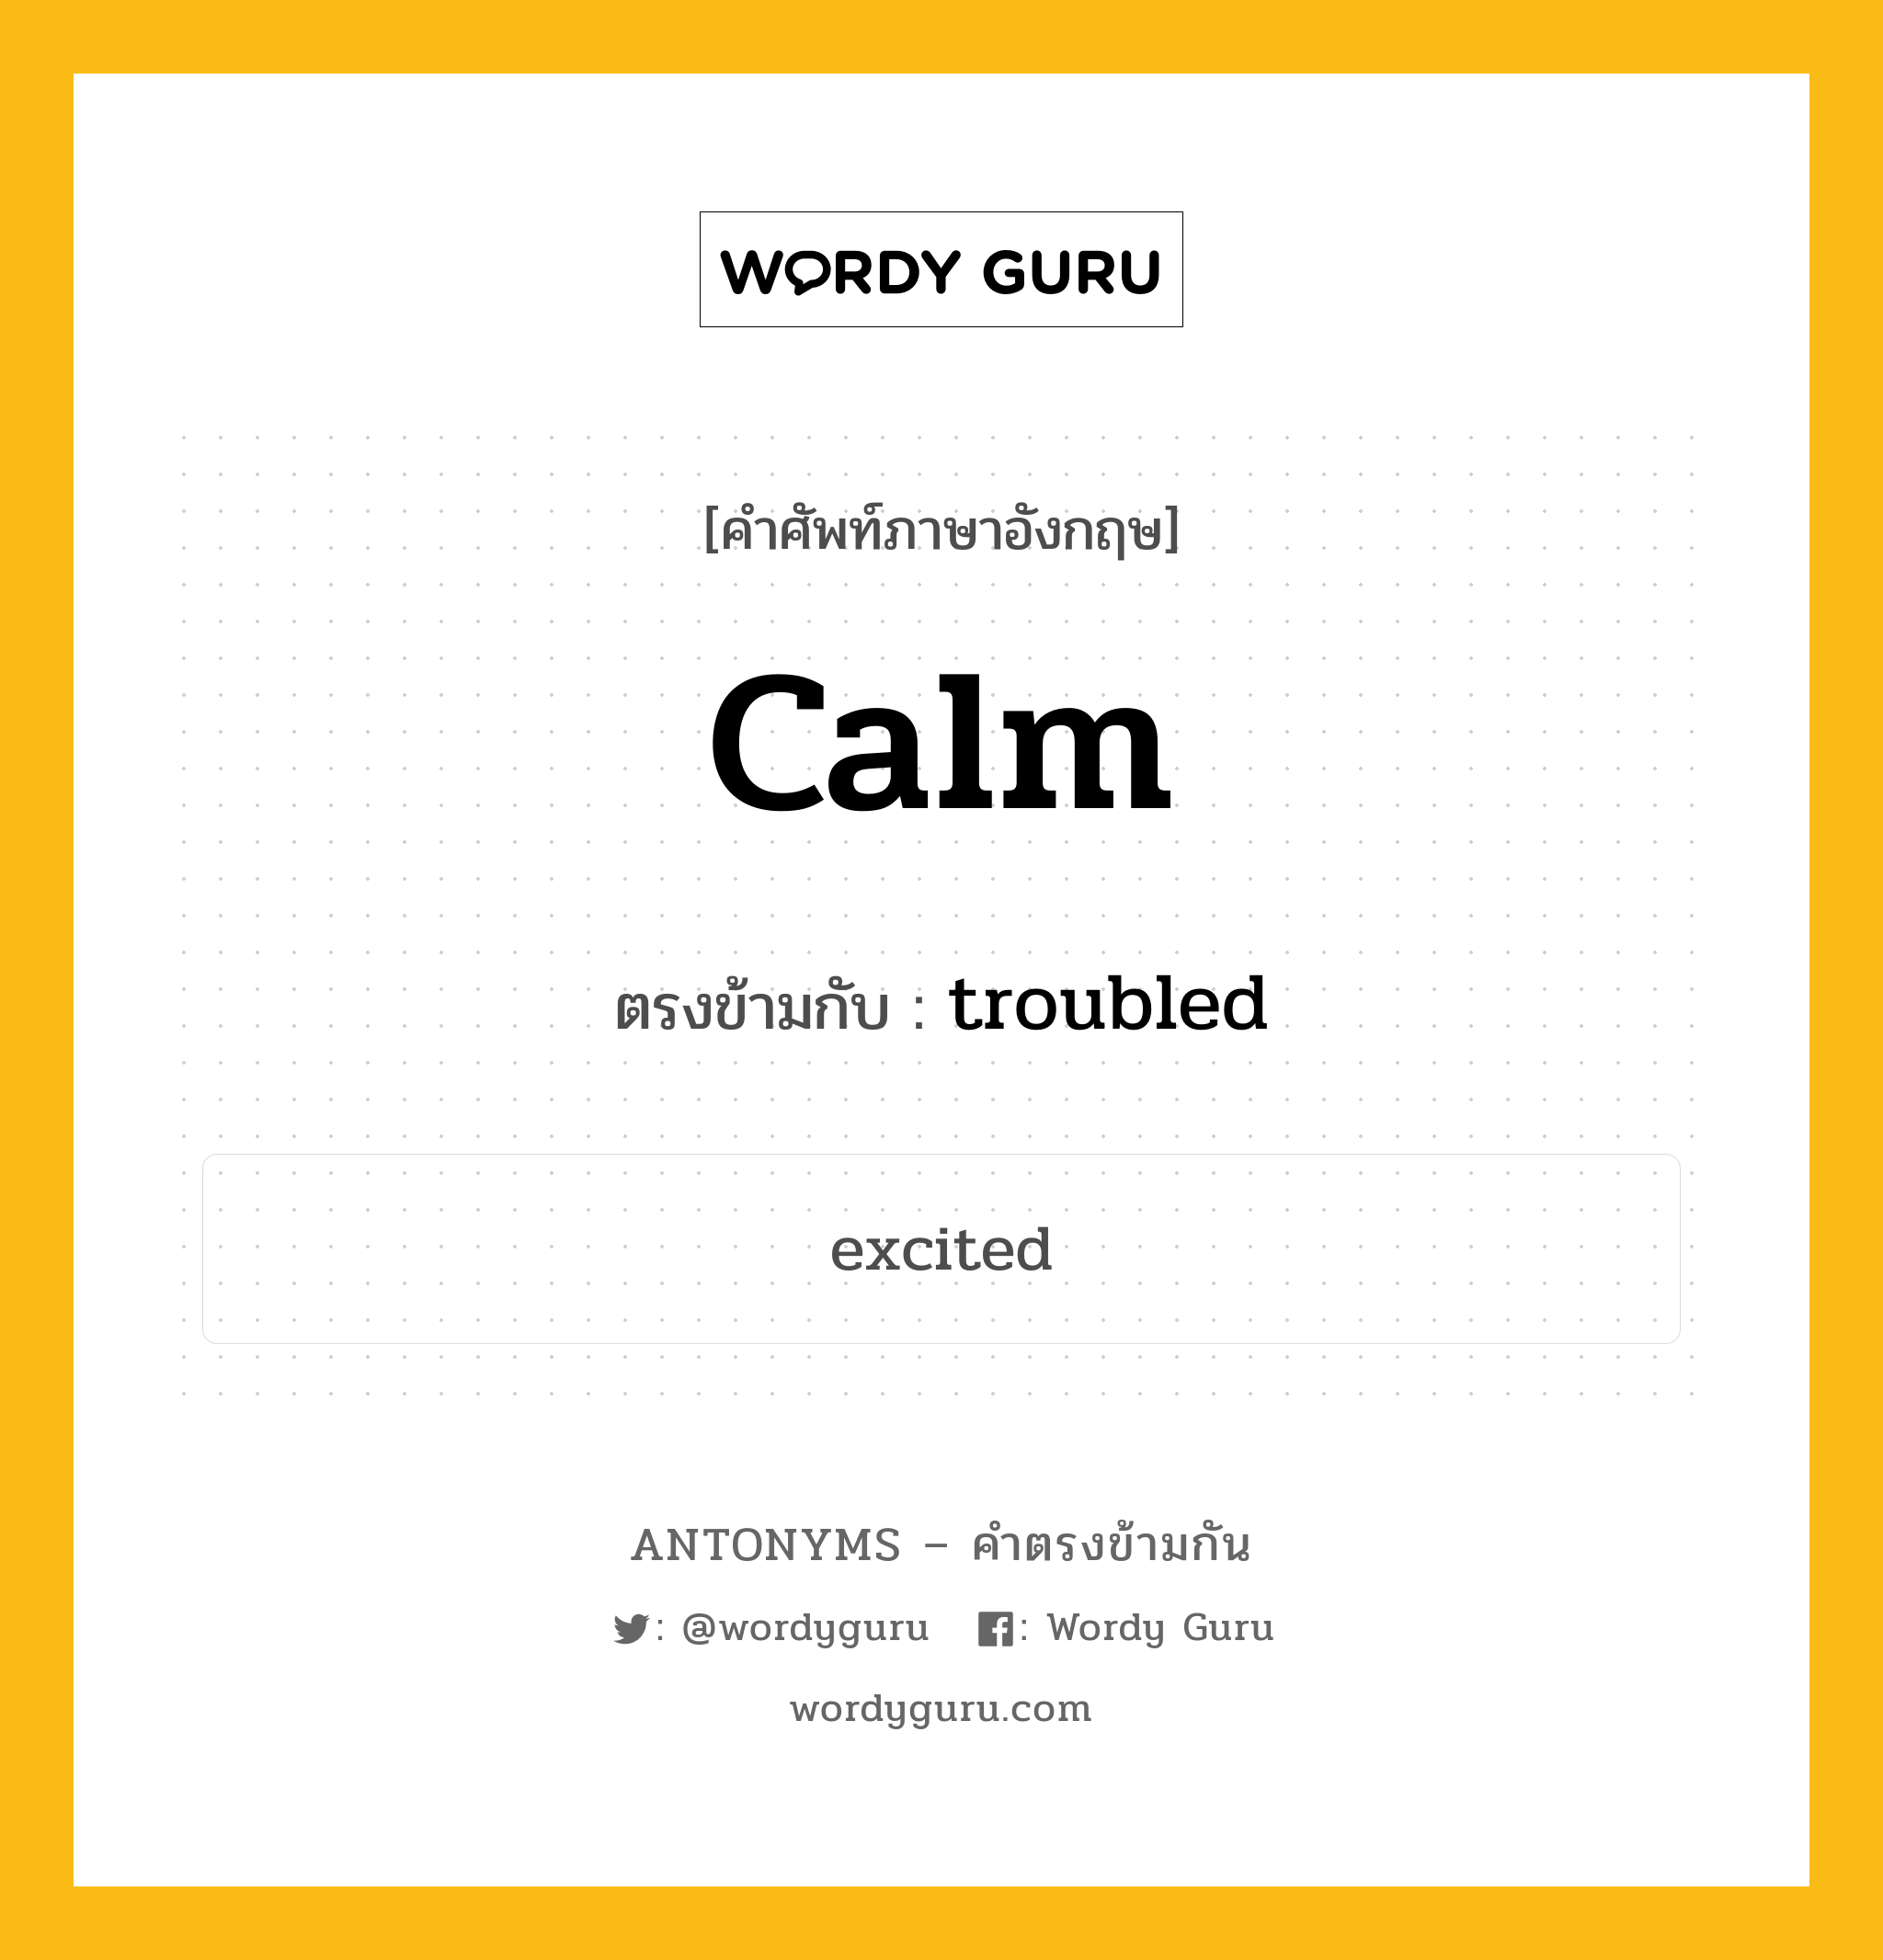 calm เป็นคำตรงข้ามกับคำไหนบ้าง?, คำศัพท์ภาษาอังกฤษ calm ตรงข้ามกับ troubled หมวด troubled